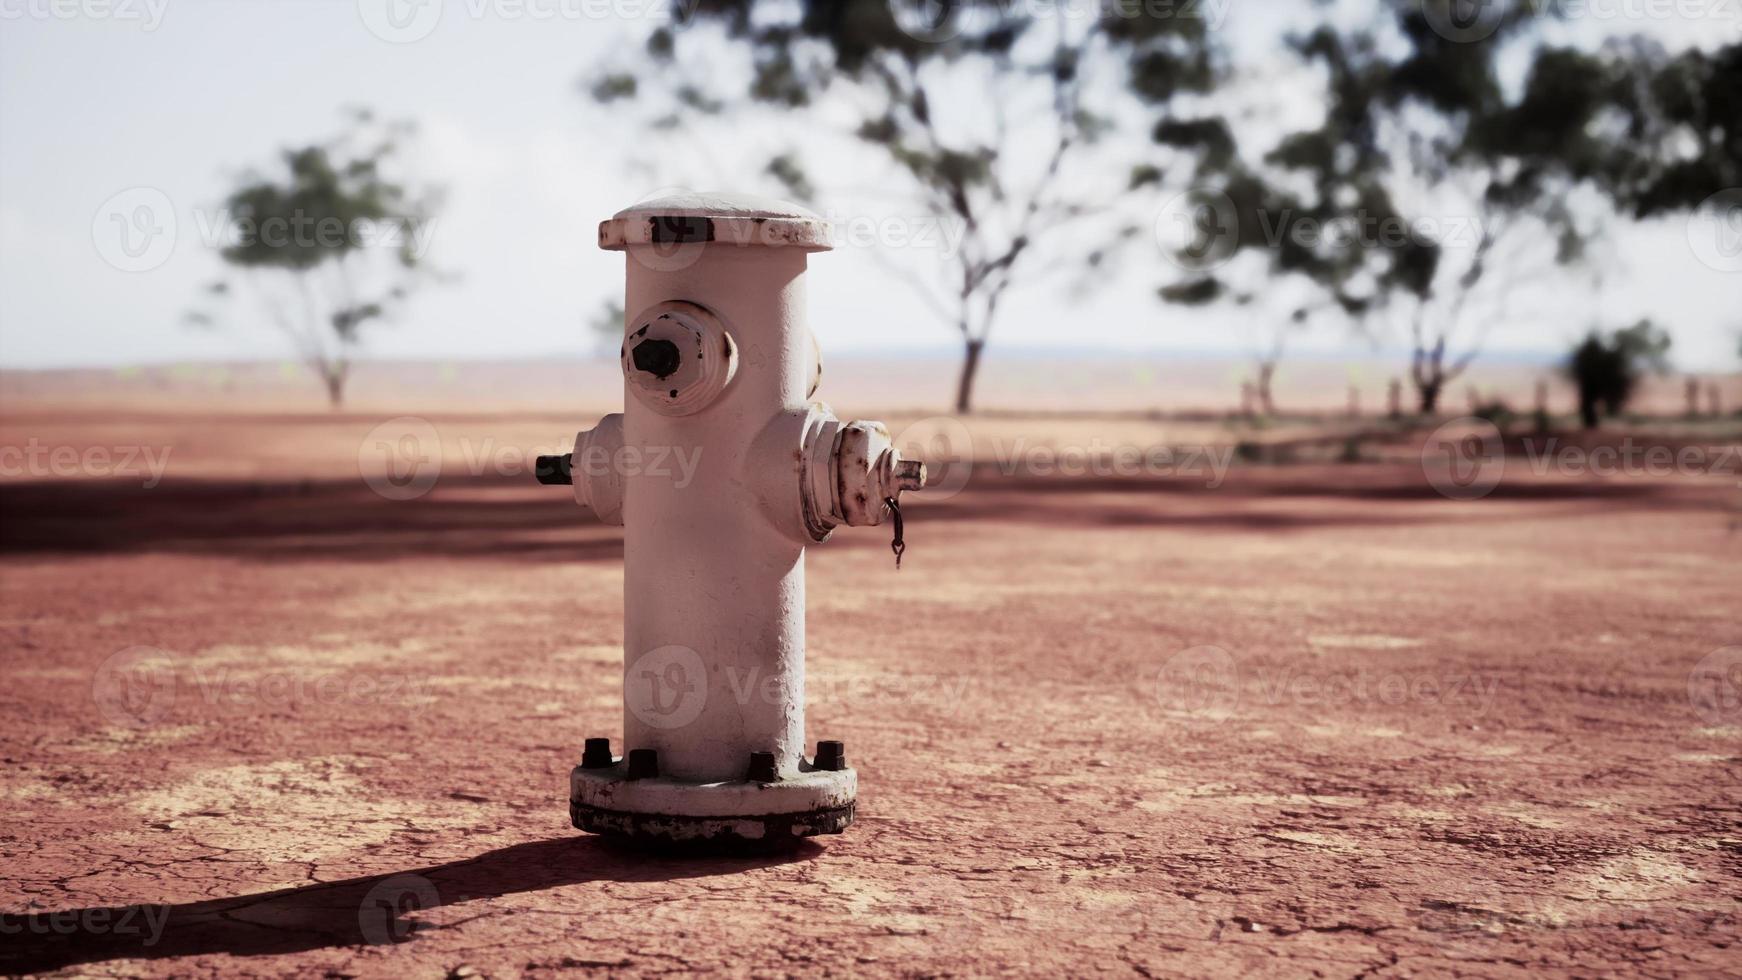 velho hidrante enferrujado no deserto foto